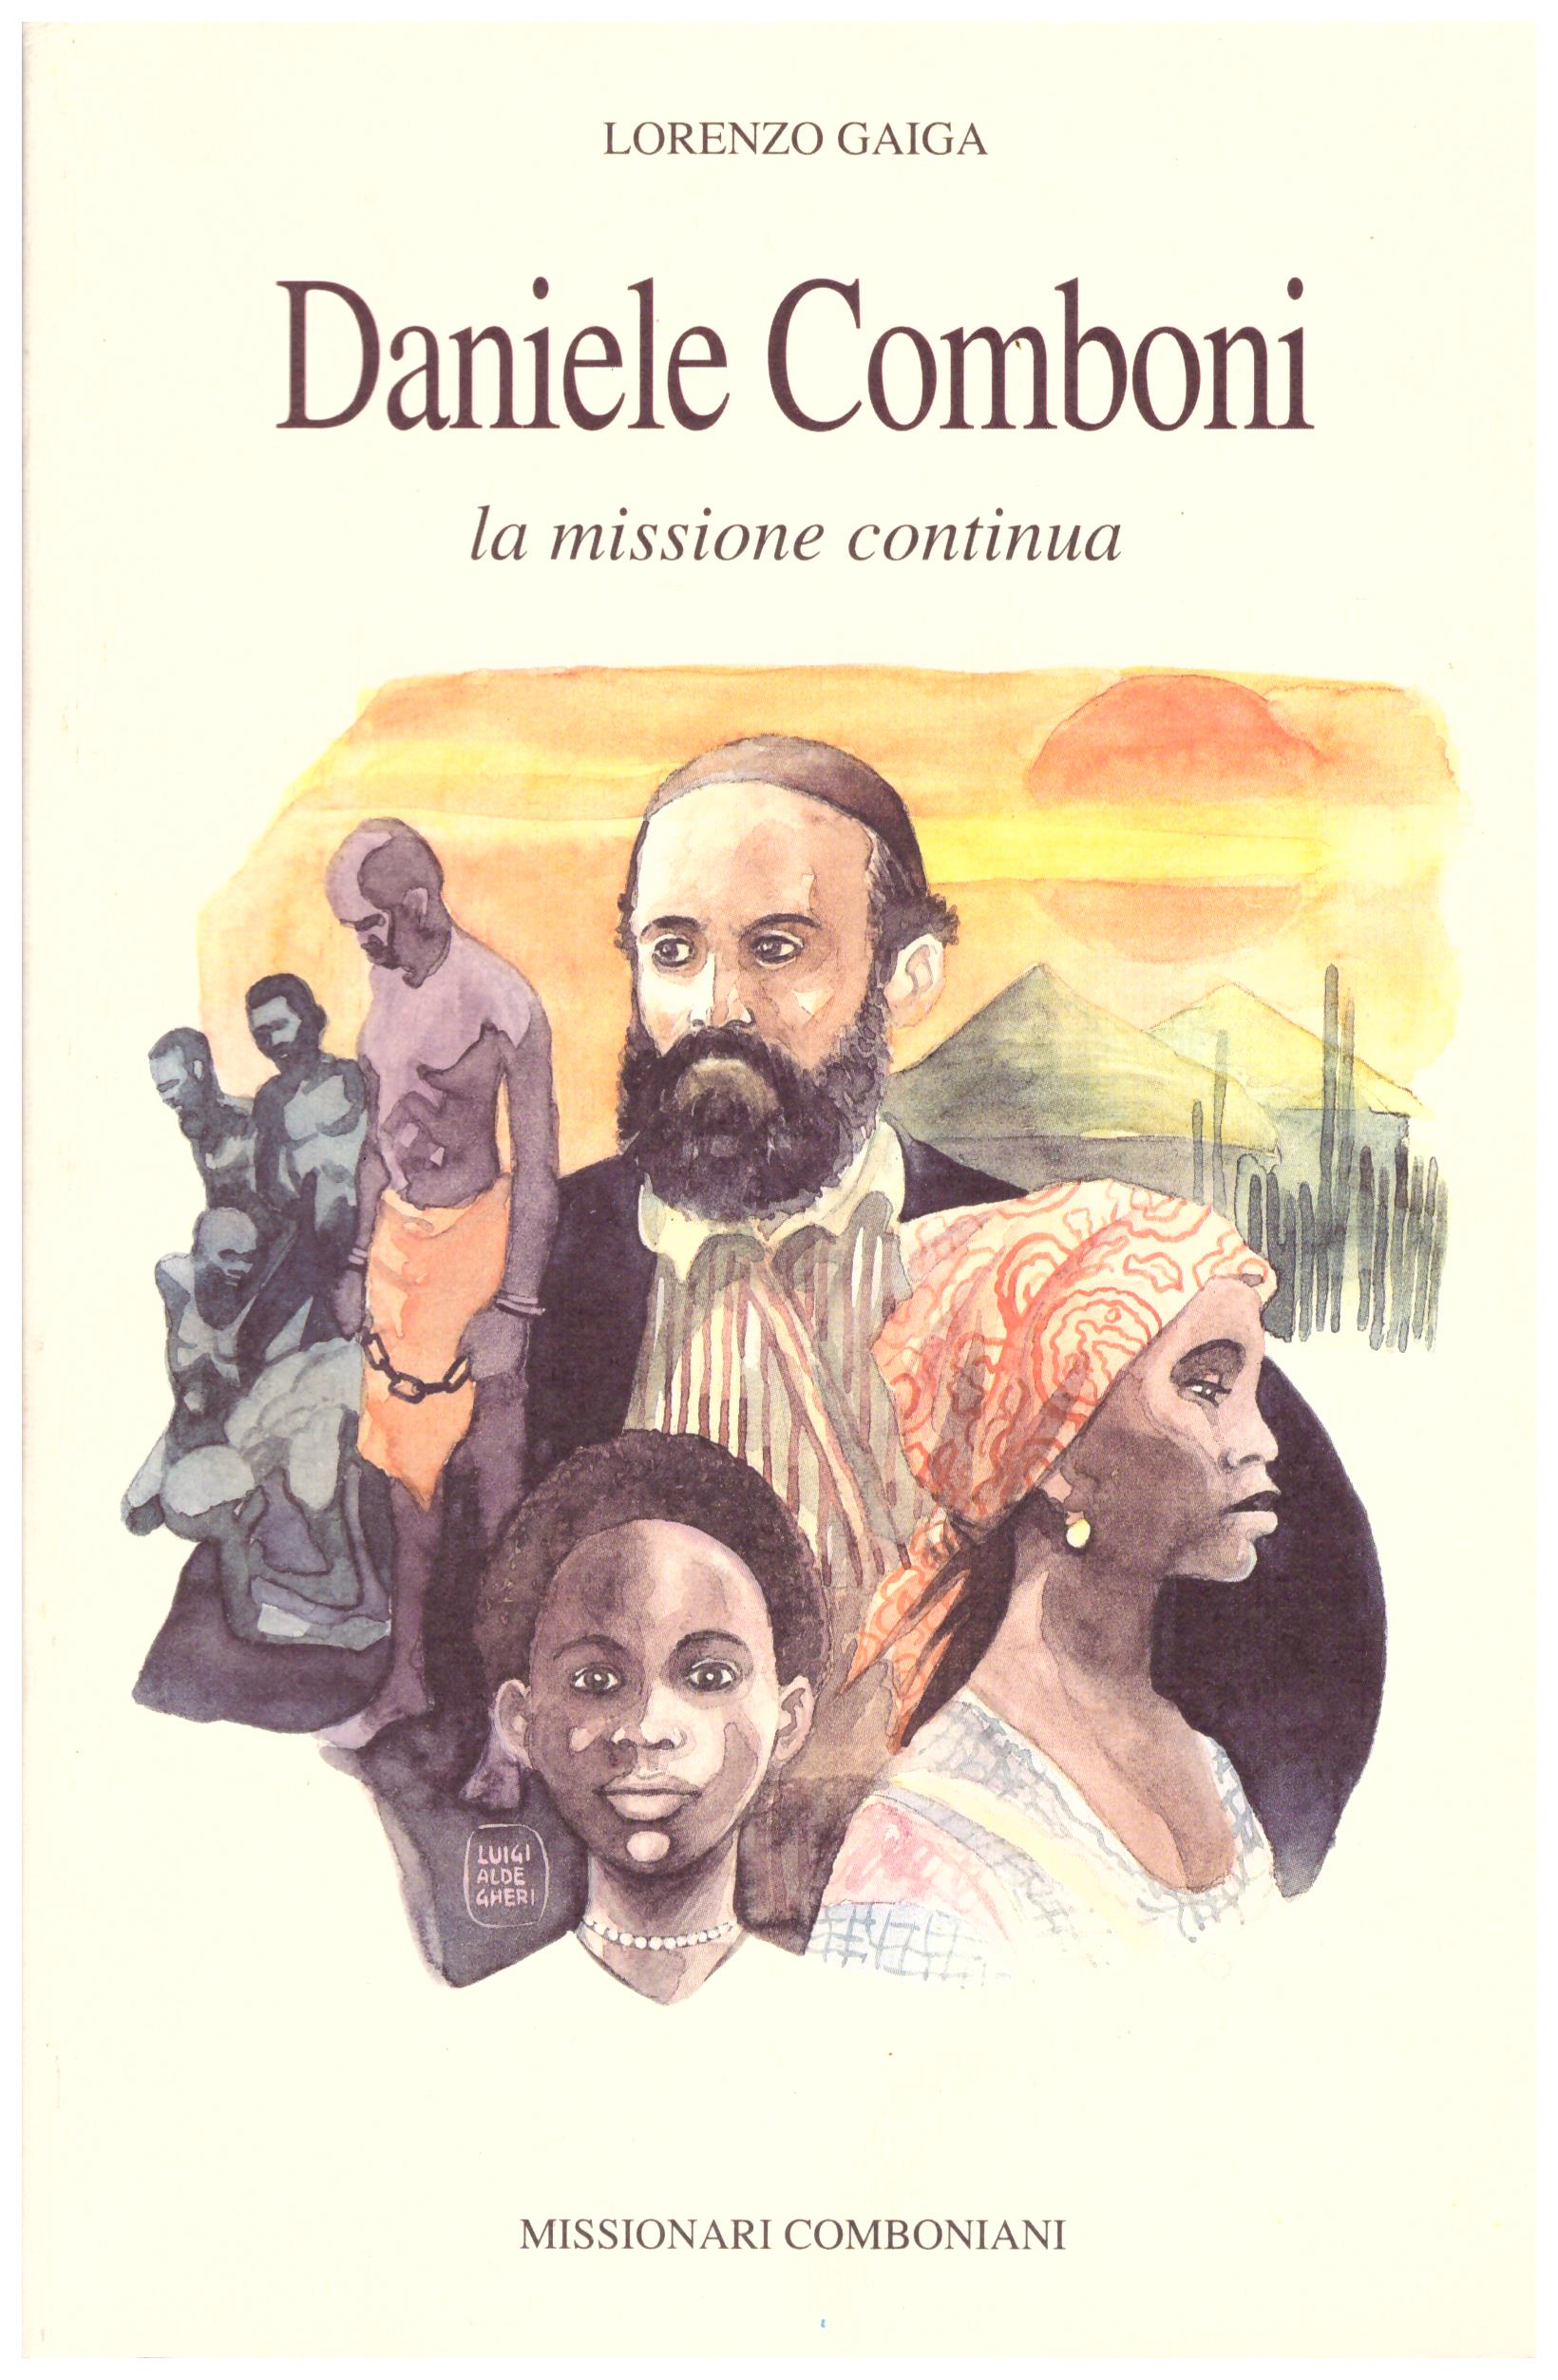 Titolo: Daniele Comboni la missione continua    Autore: Lorenzo Gaiga    Editore: Missionari comboniani